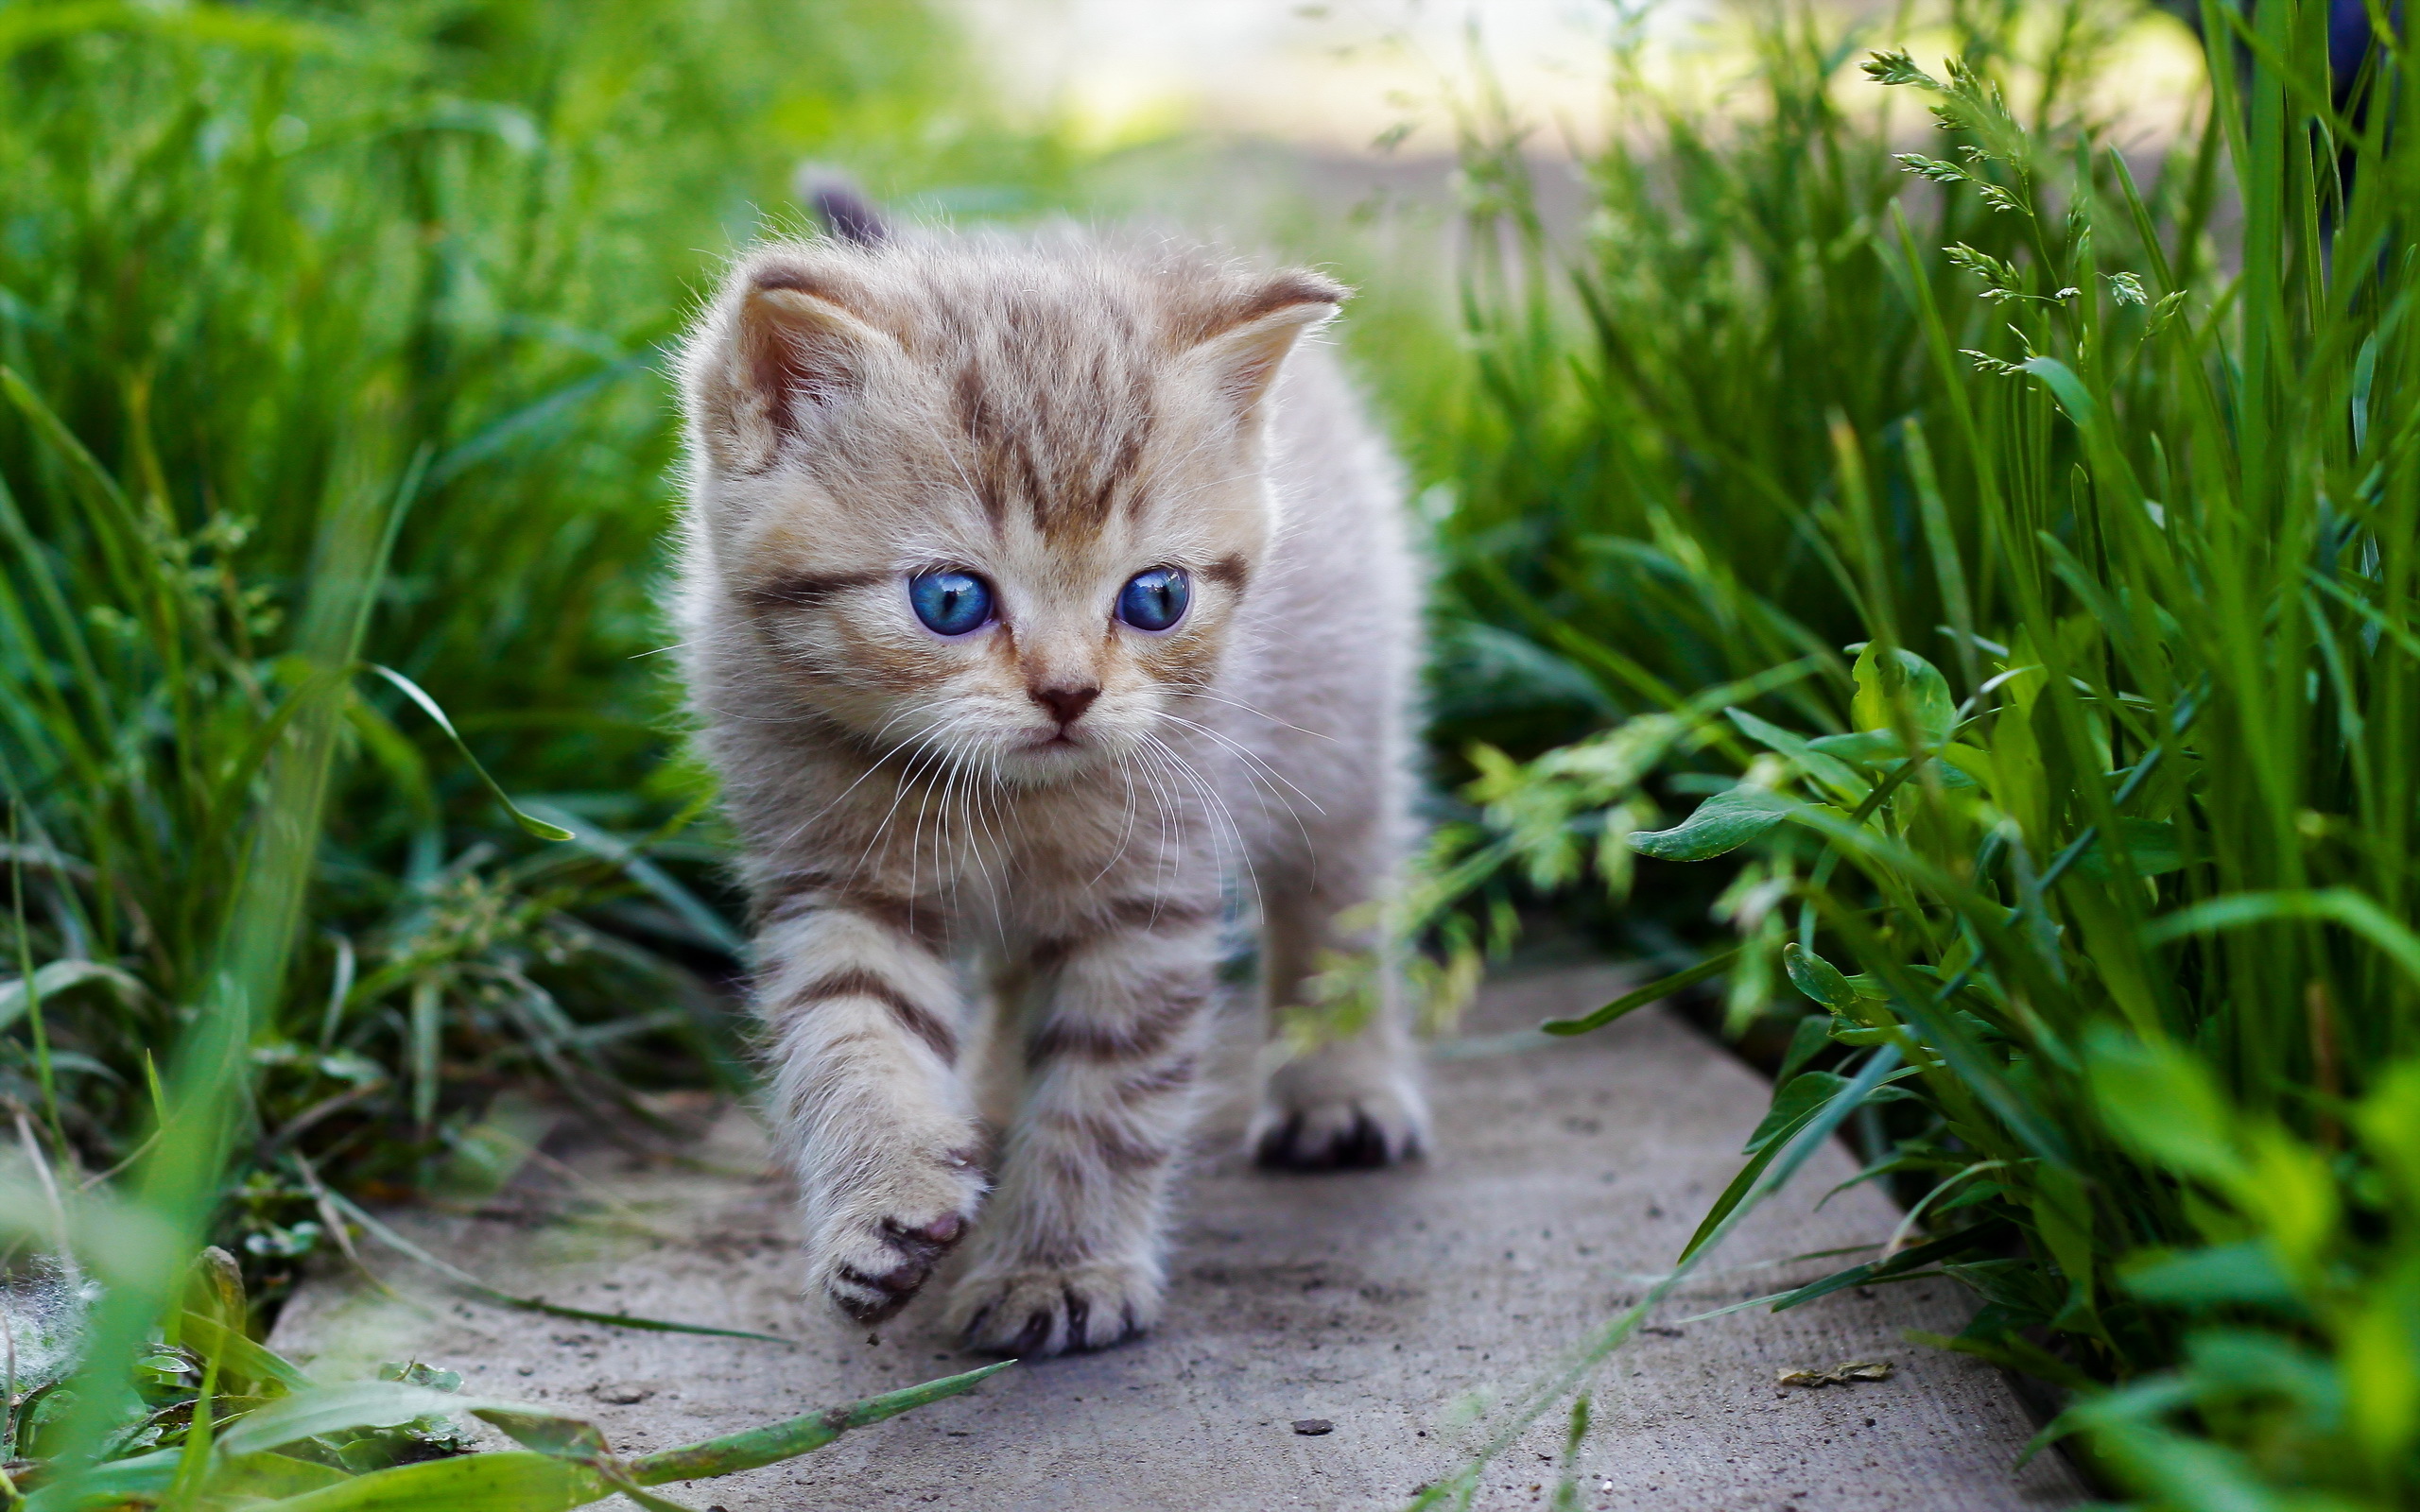 cats, Kittens, Grass, Animals, Kitten, Eyes, Baby, Cute, Cat Wallpaper